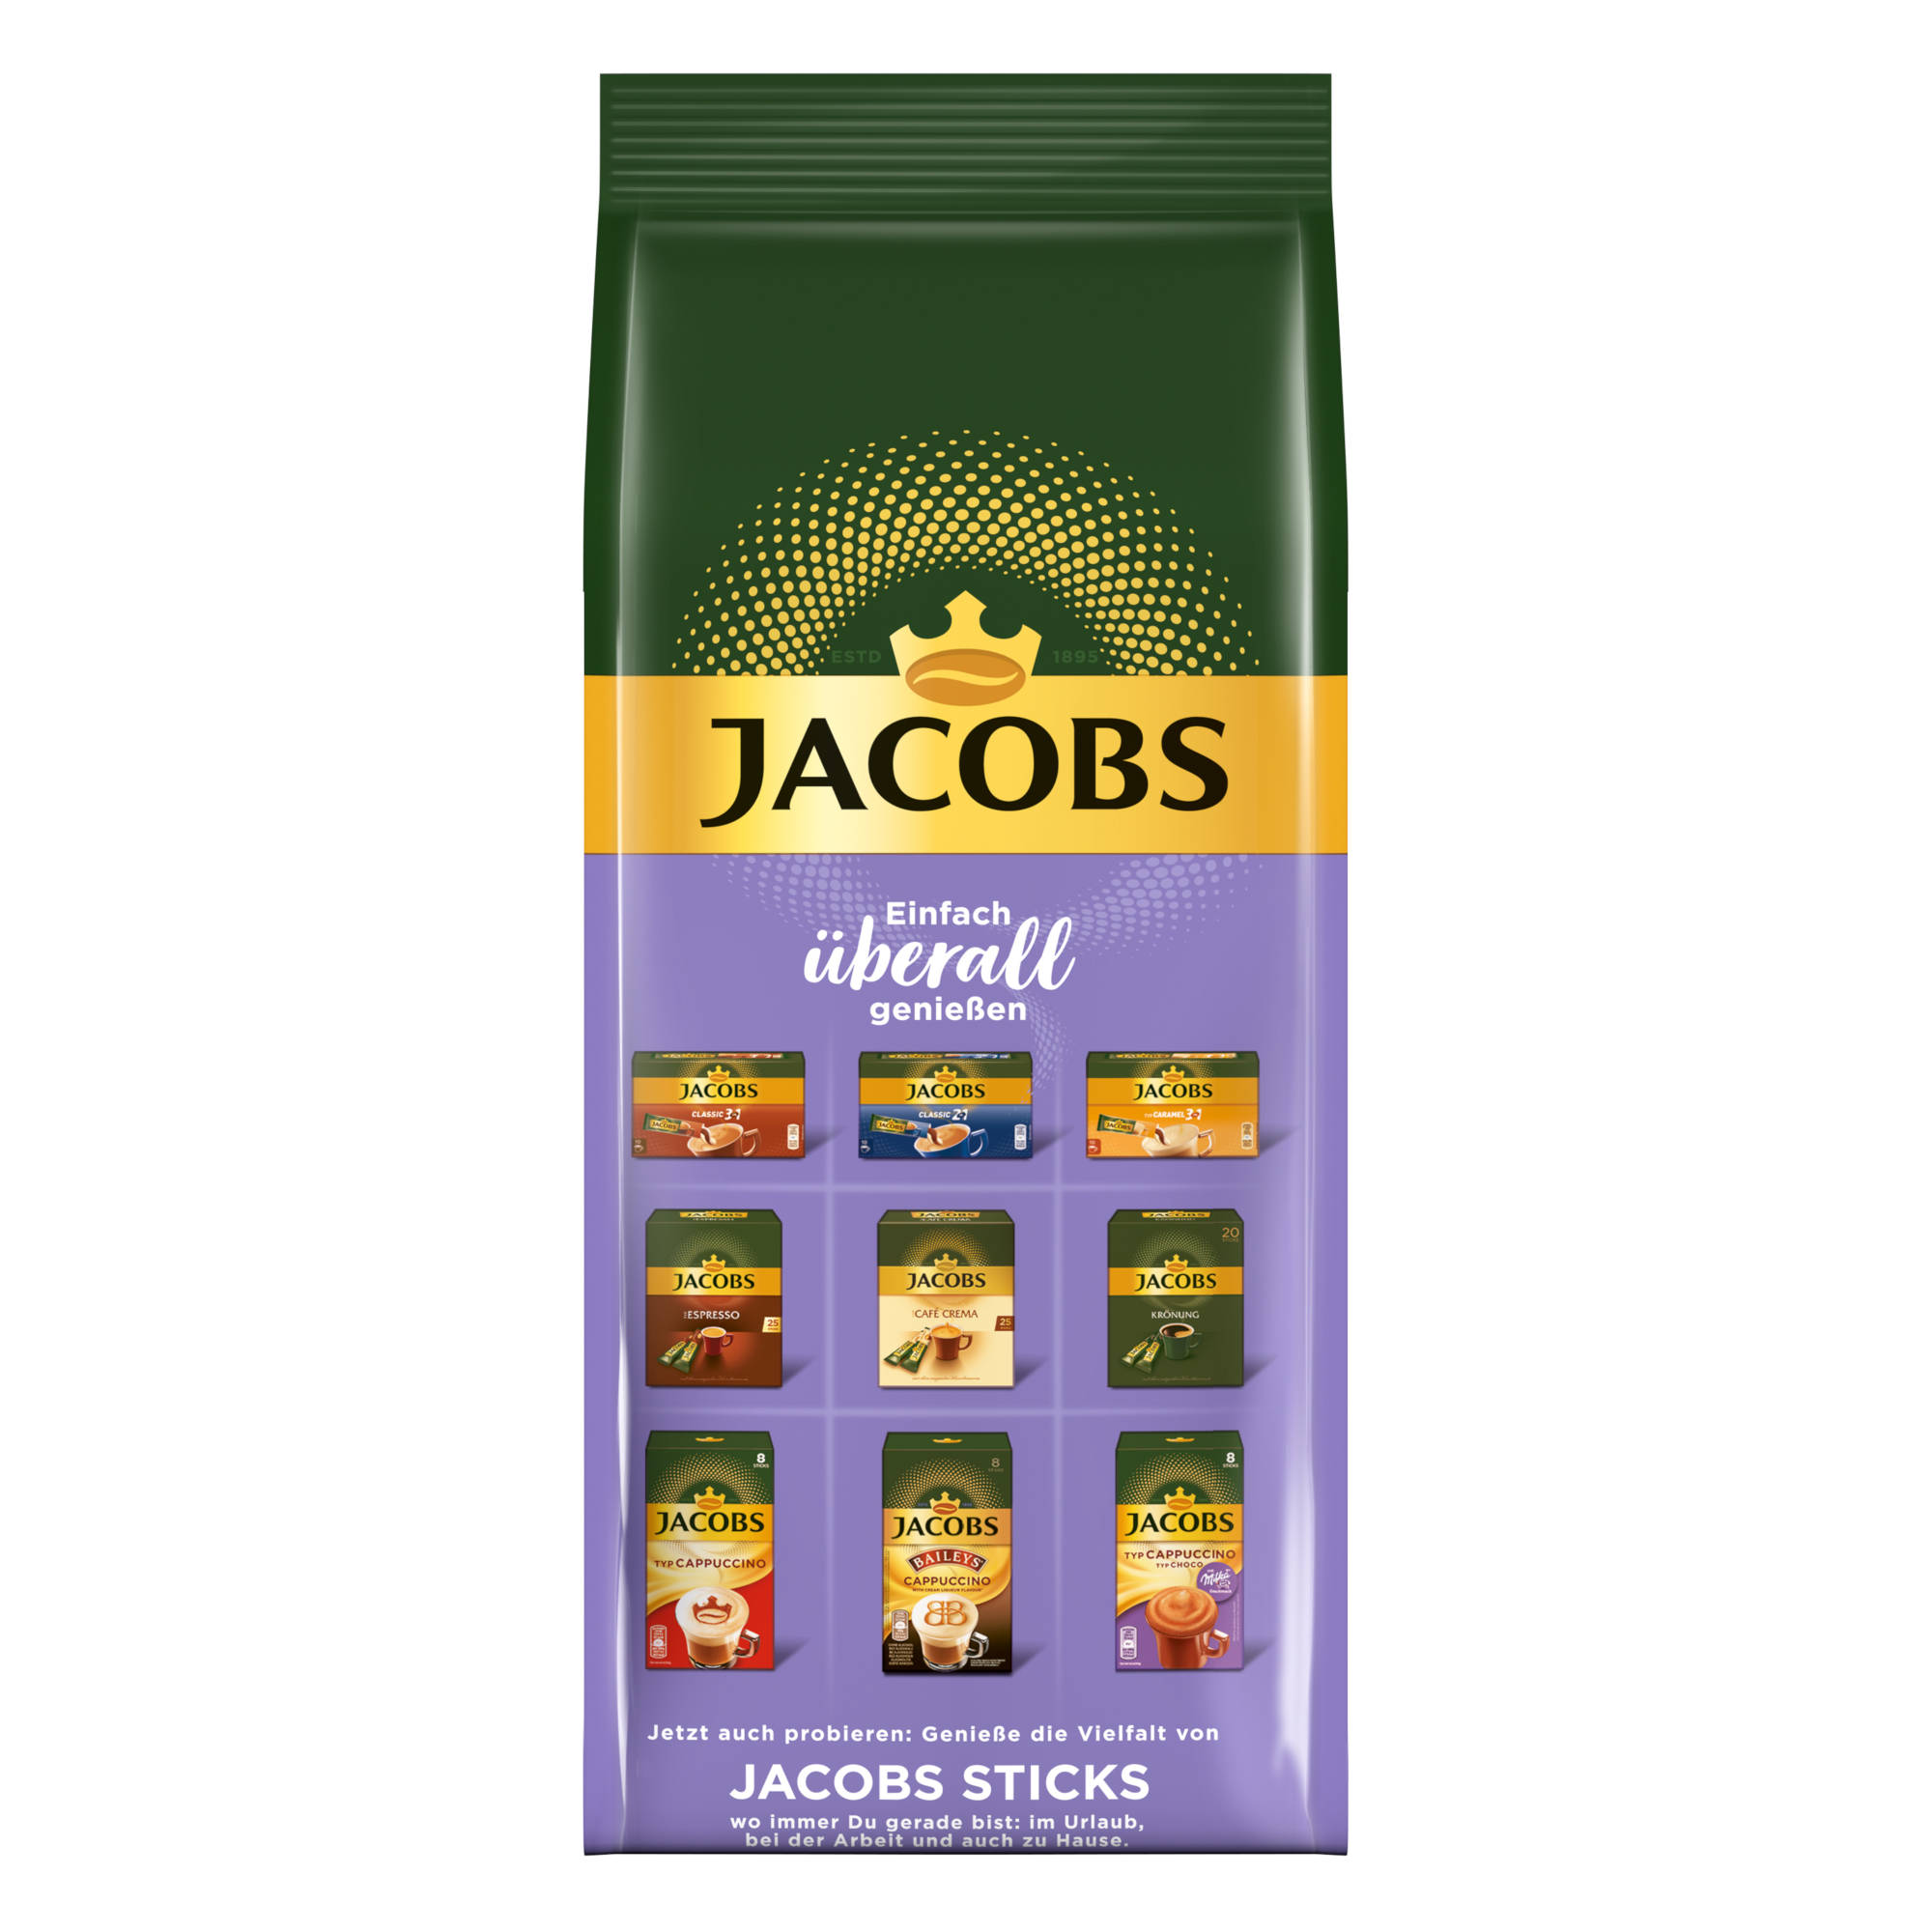 JACOBS Typ heißem 12 x Beutel Choco Instantkaffee mit g Wasser Cappuccino auflösen) Milka (In 500 Geschmack